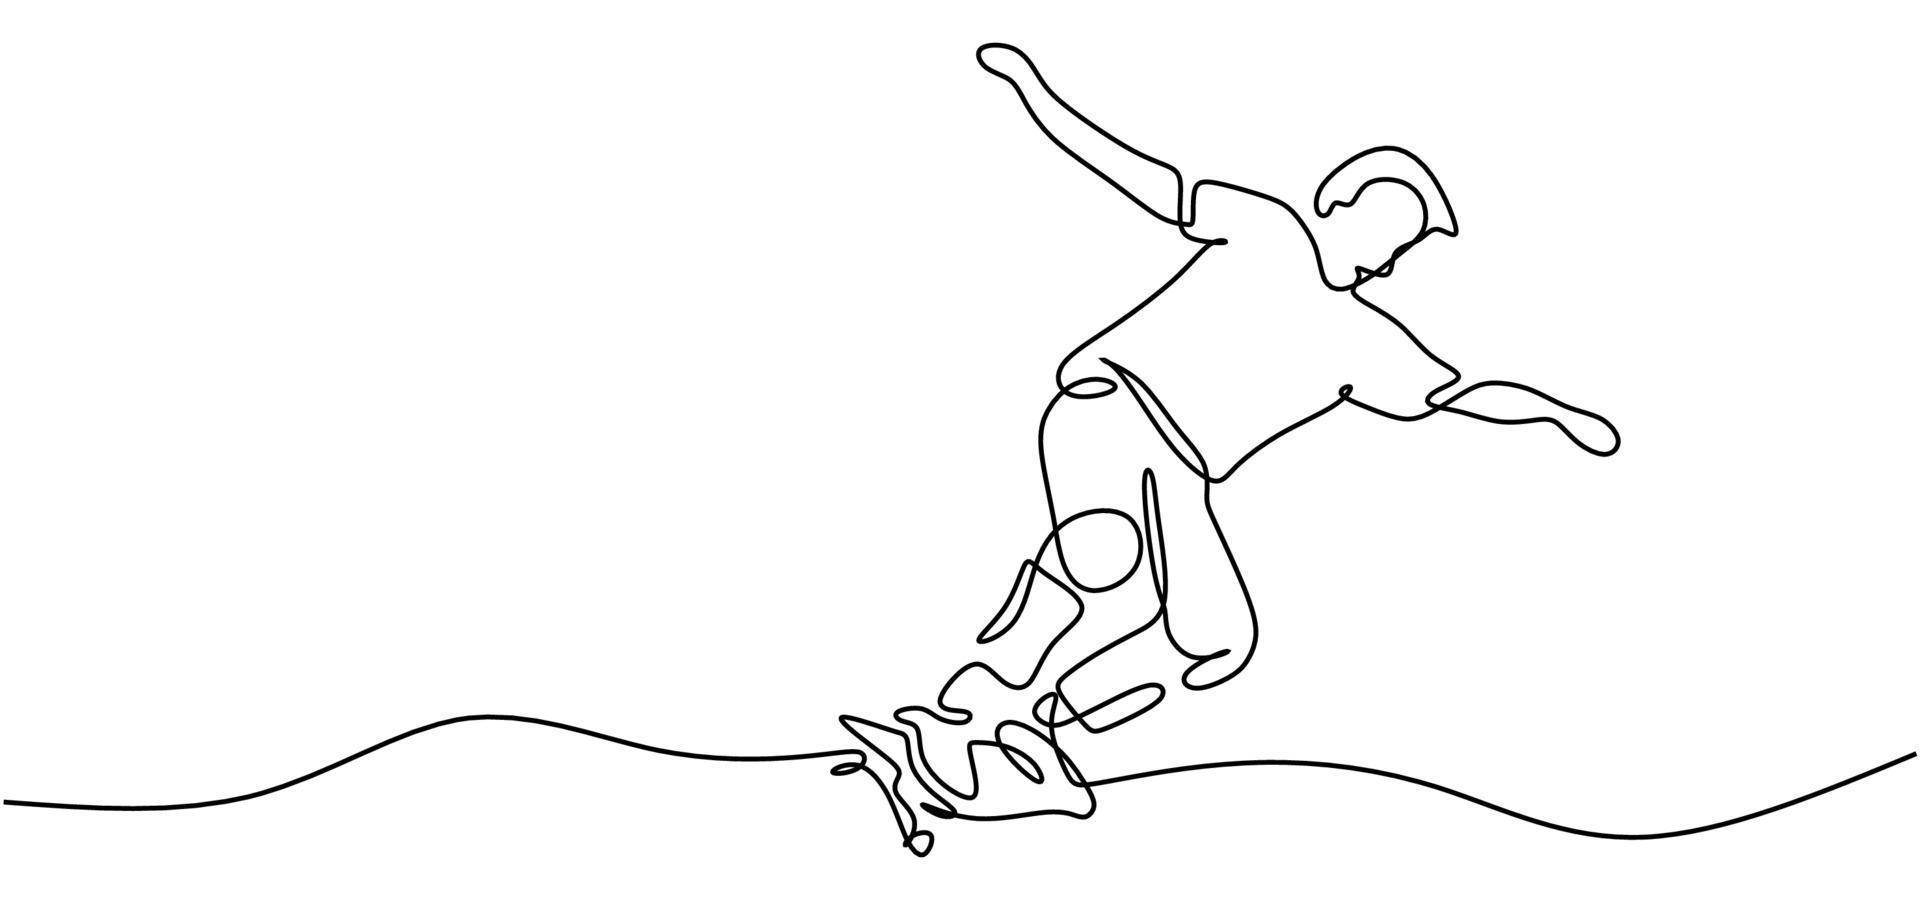 la gente juega patineta dibujo de una línea vector